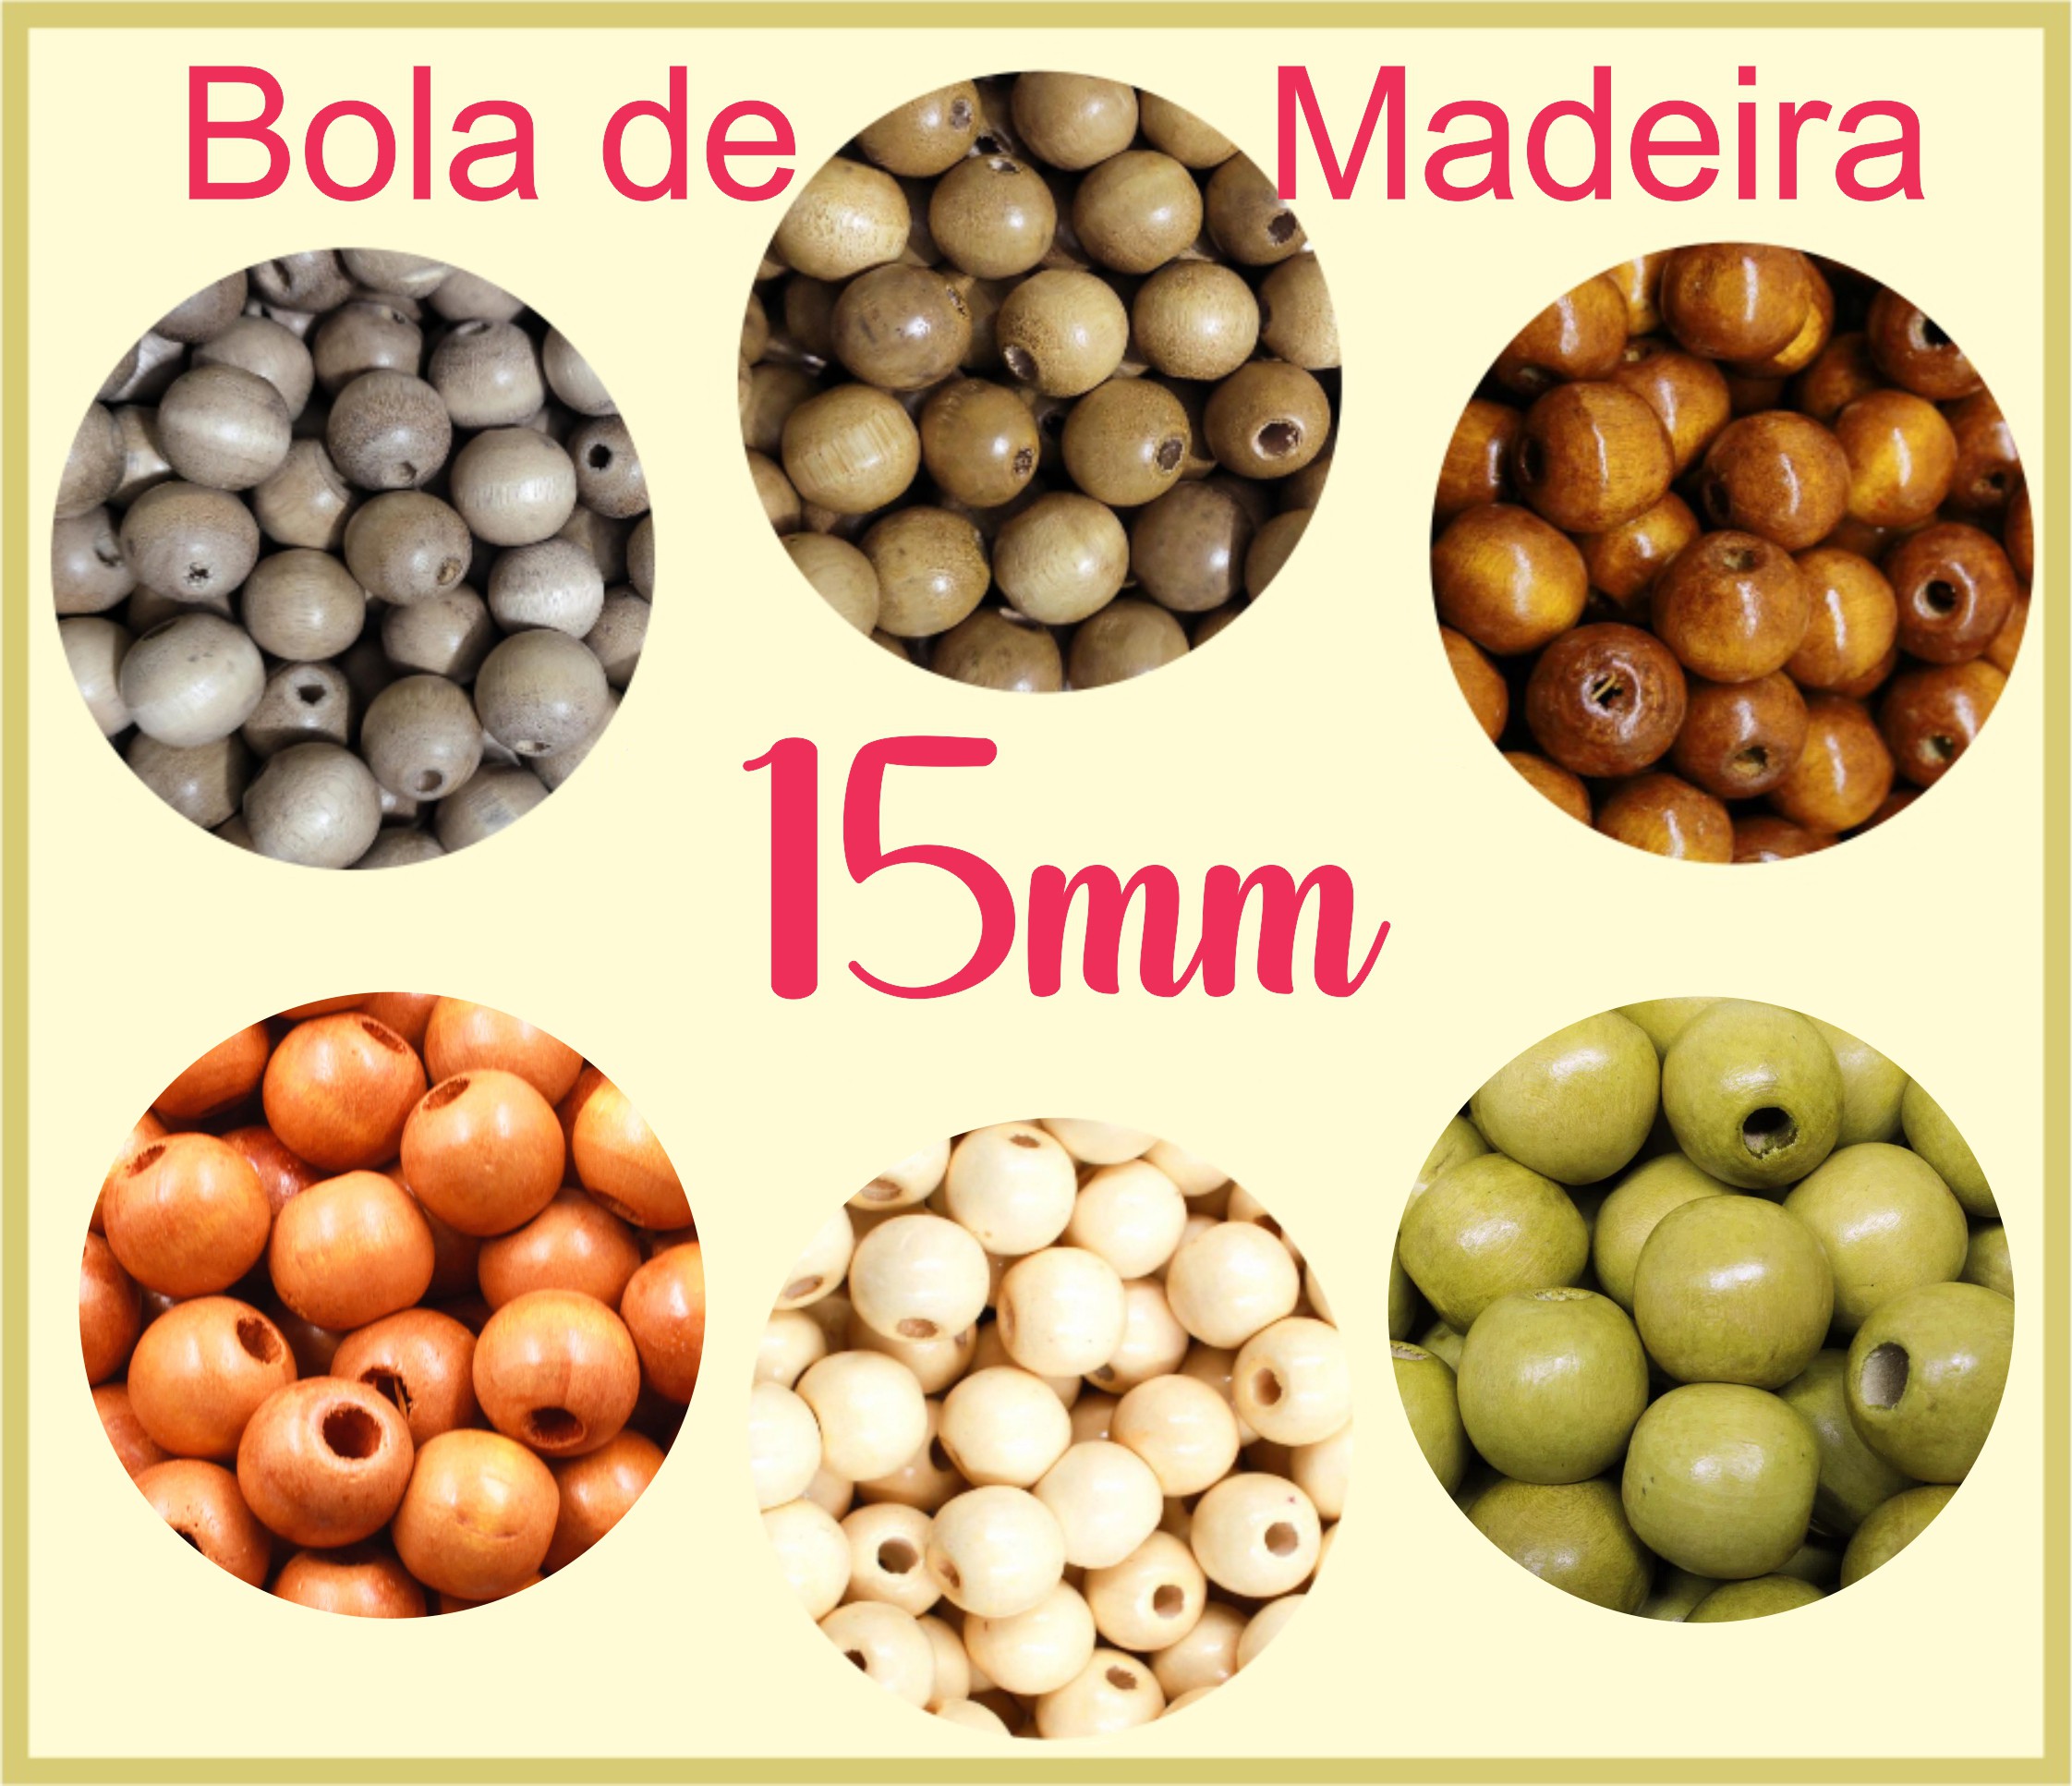 Bola de Madeira (Missanga, Miçanga, Entremeio, bola macramê) - 15mm -  Pacote com 10 unidades da mesma cor - Leilarte Aviamentos